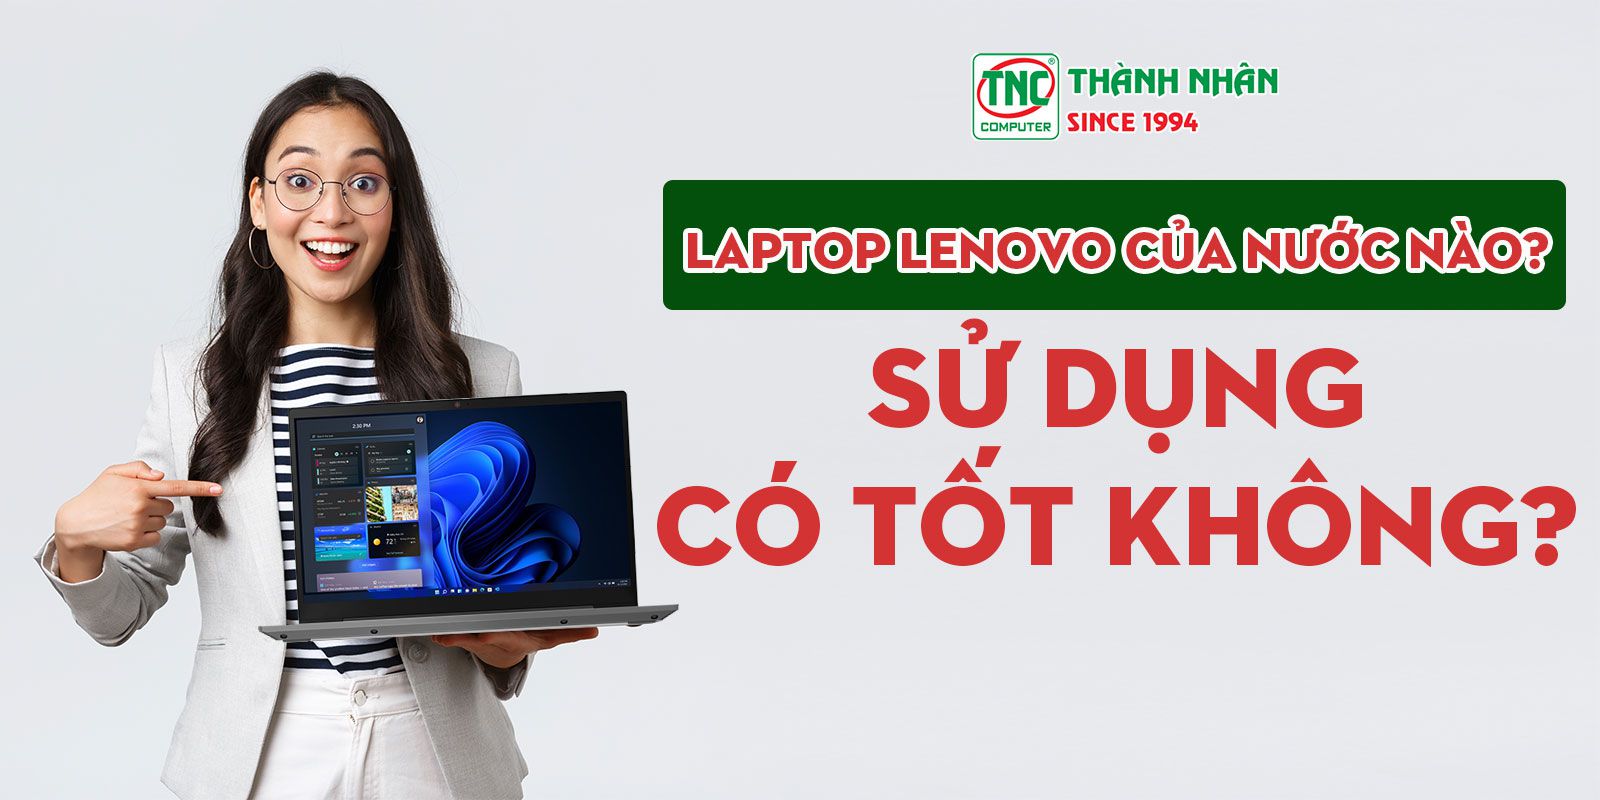 Laptop lenovo của nước nào?